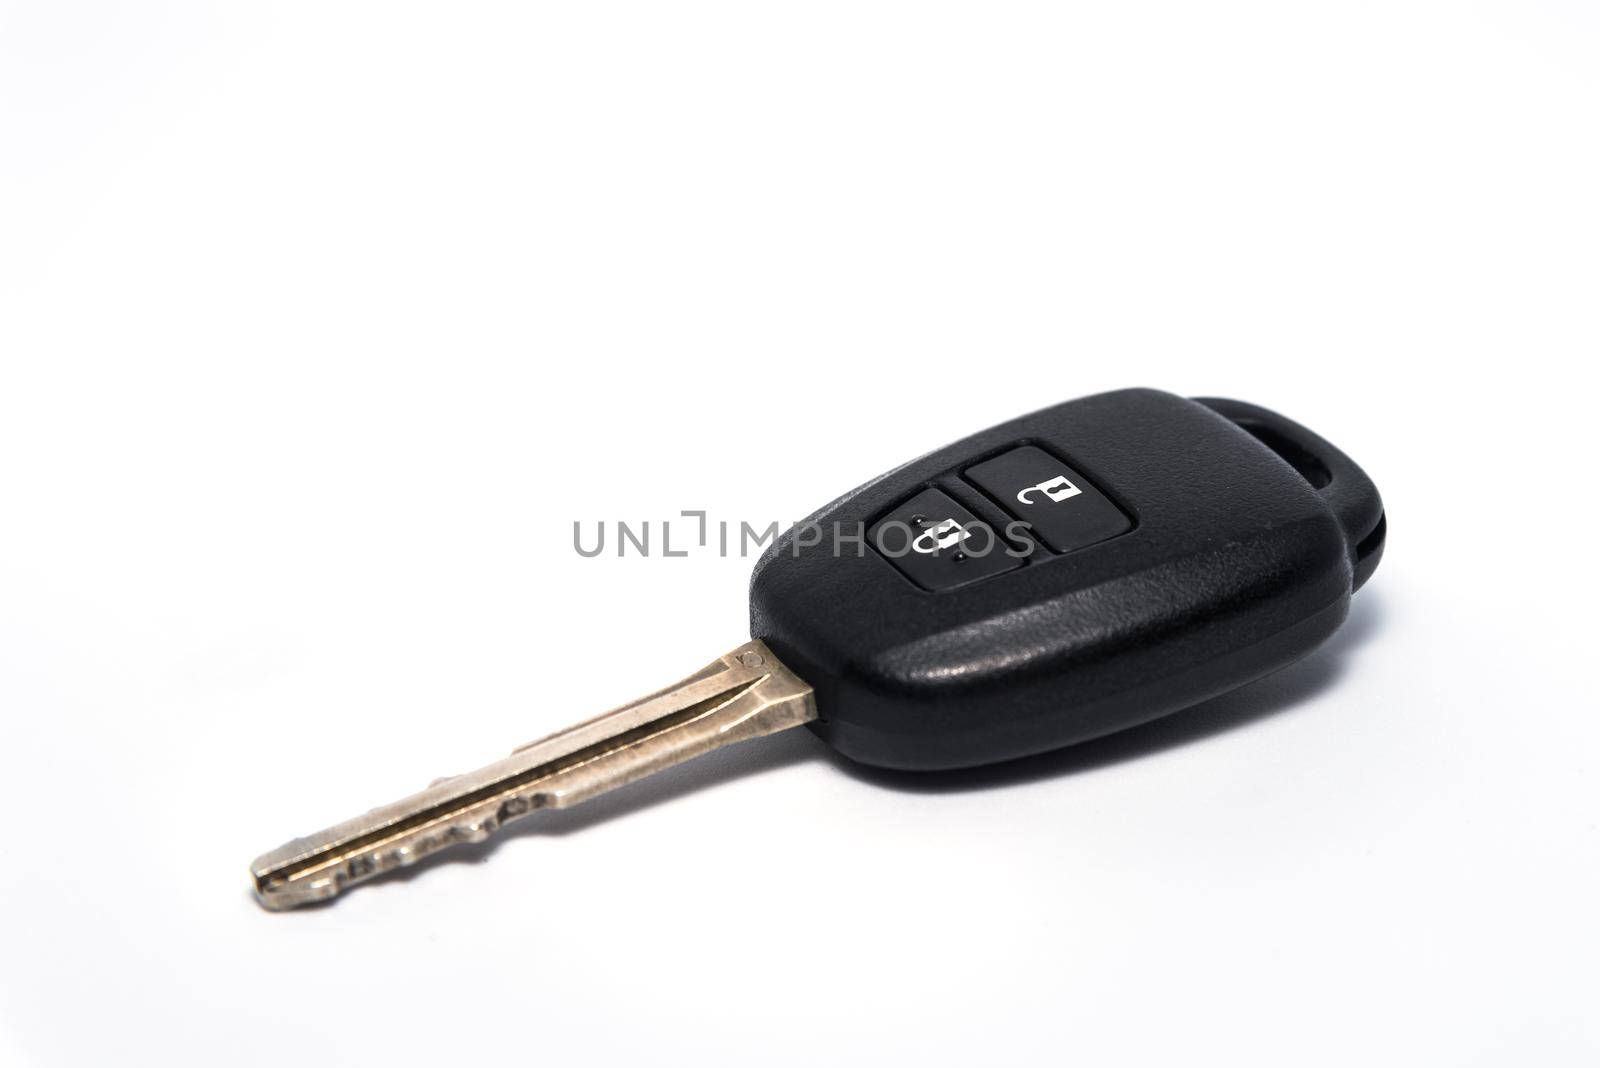 car key isolated on white background